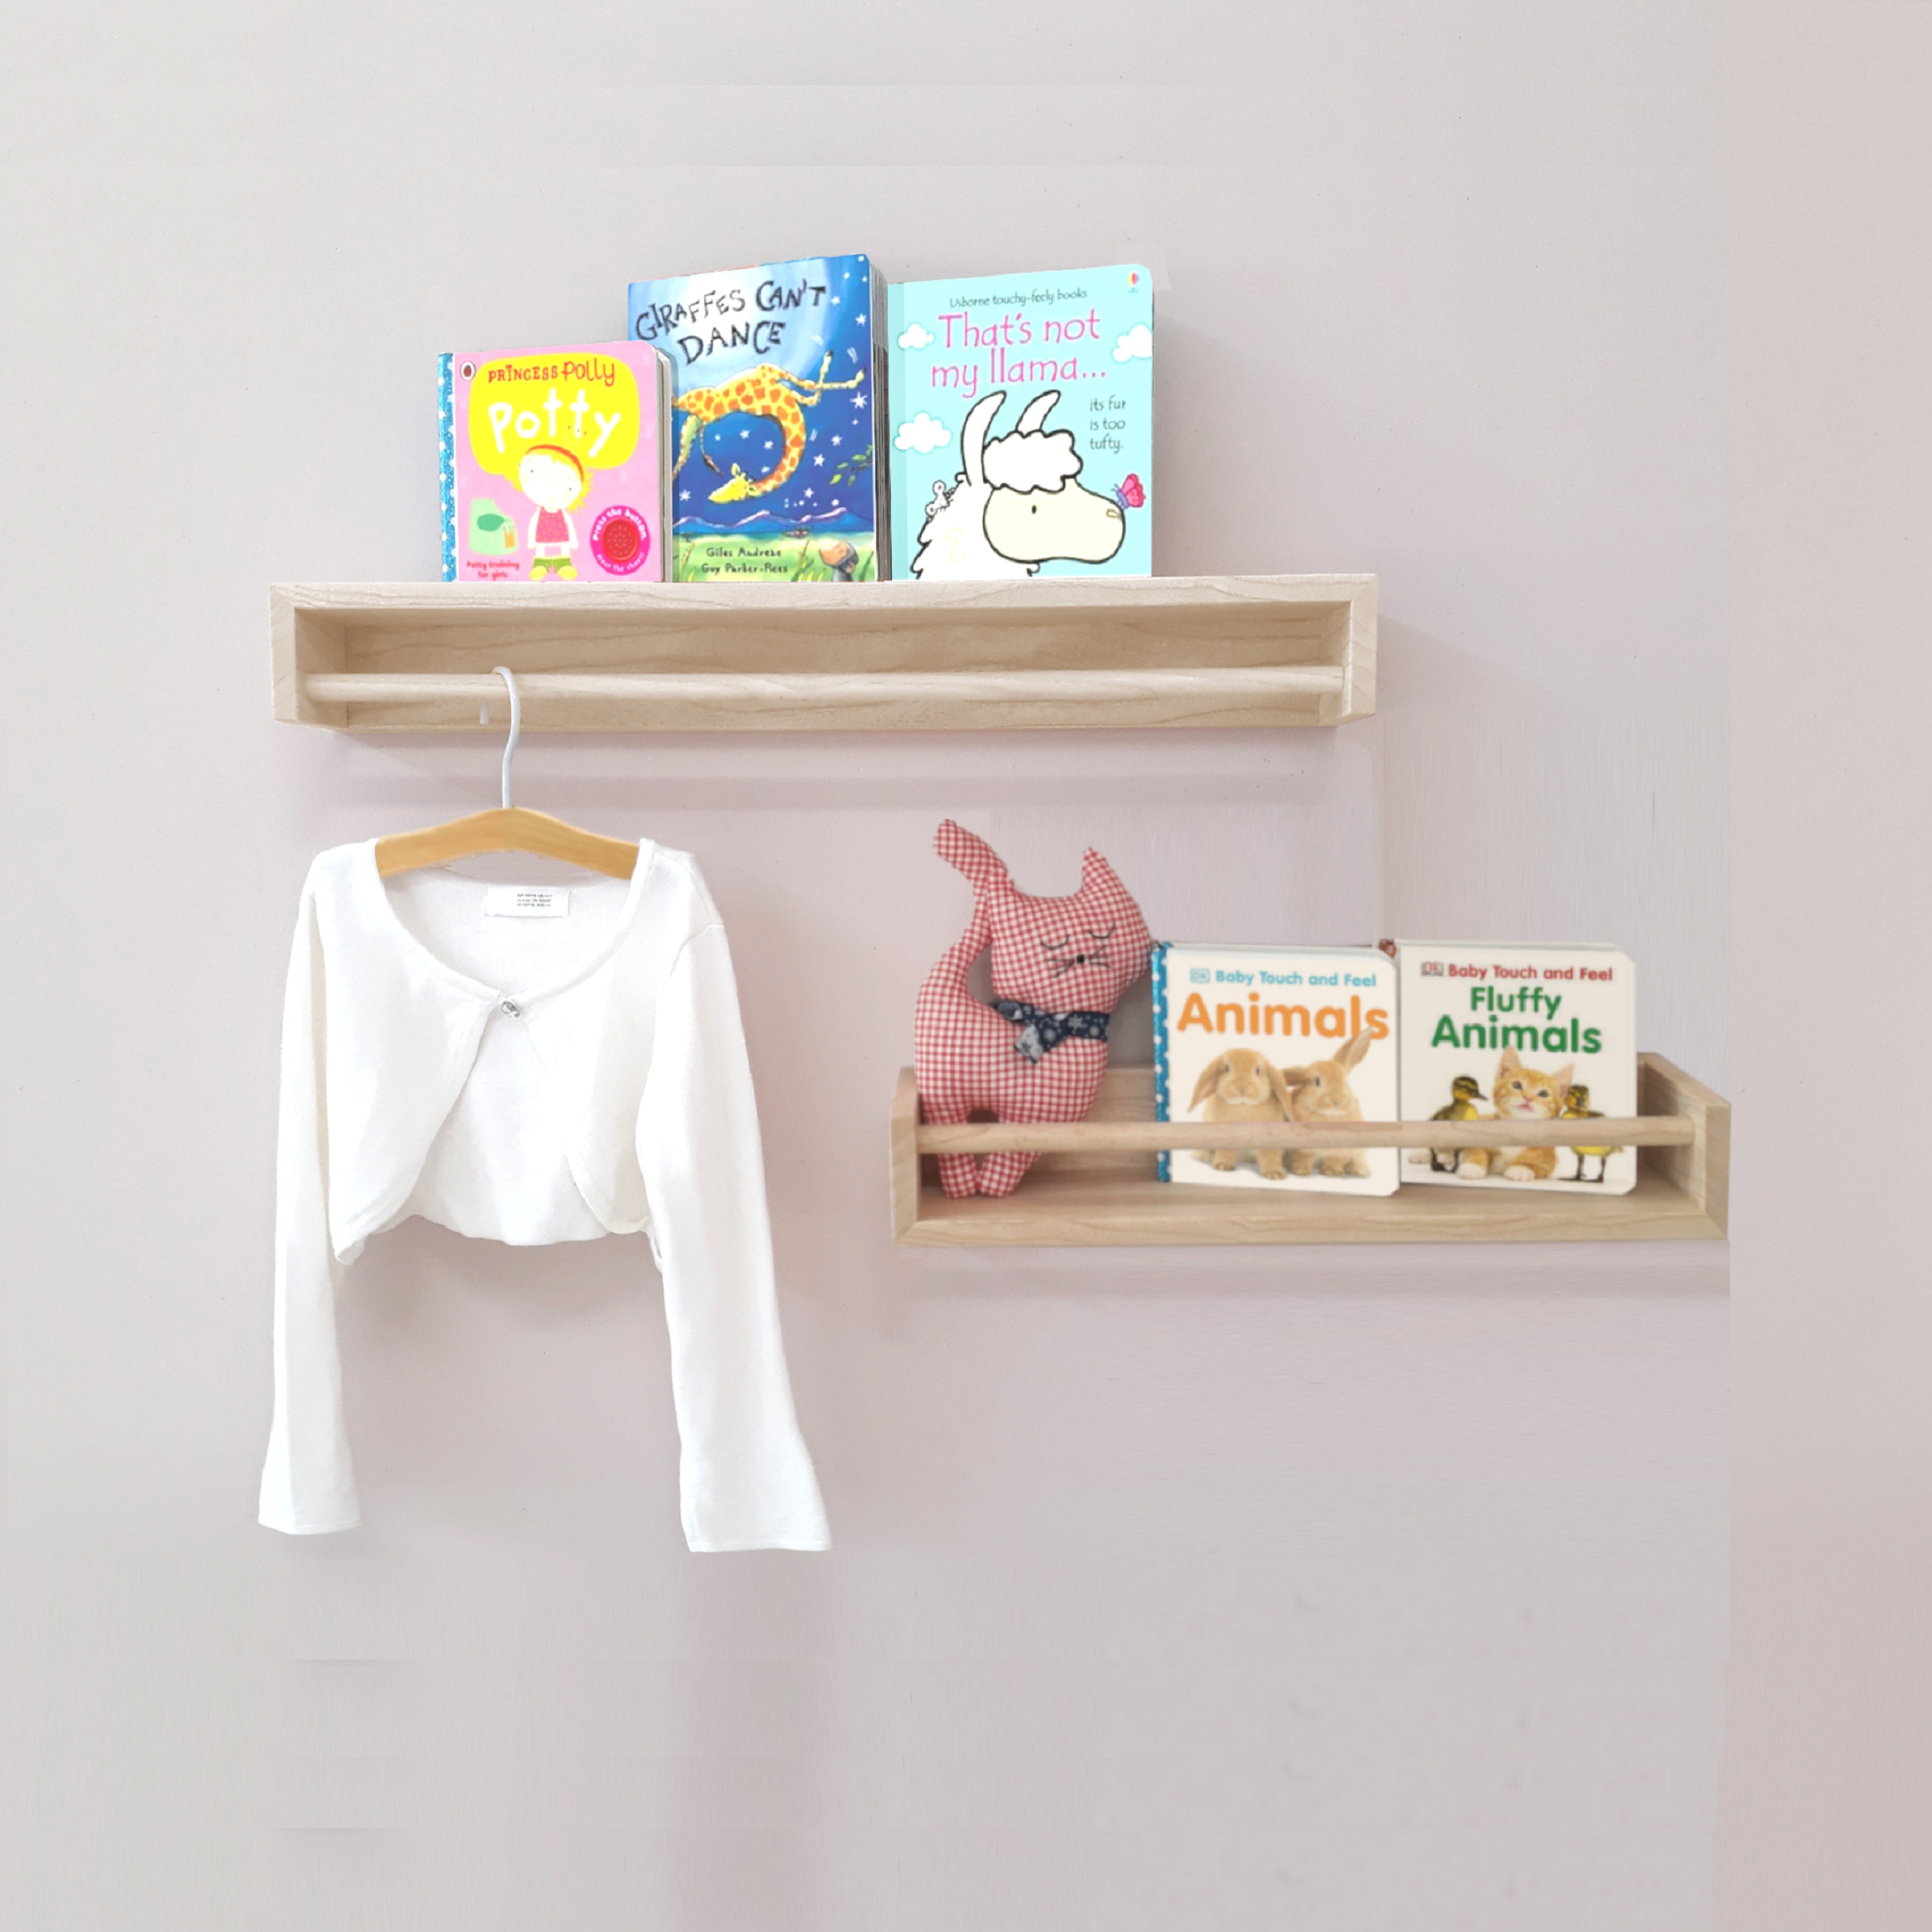 Cloud Toddler Clothing Rack – Simre Kids